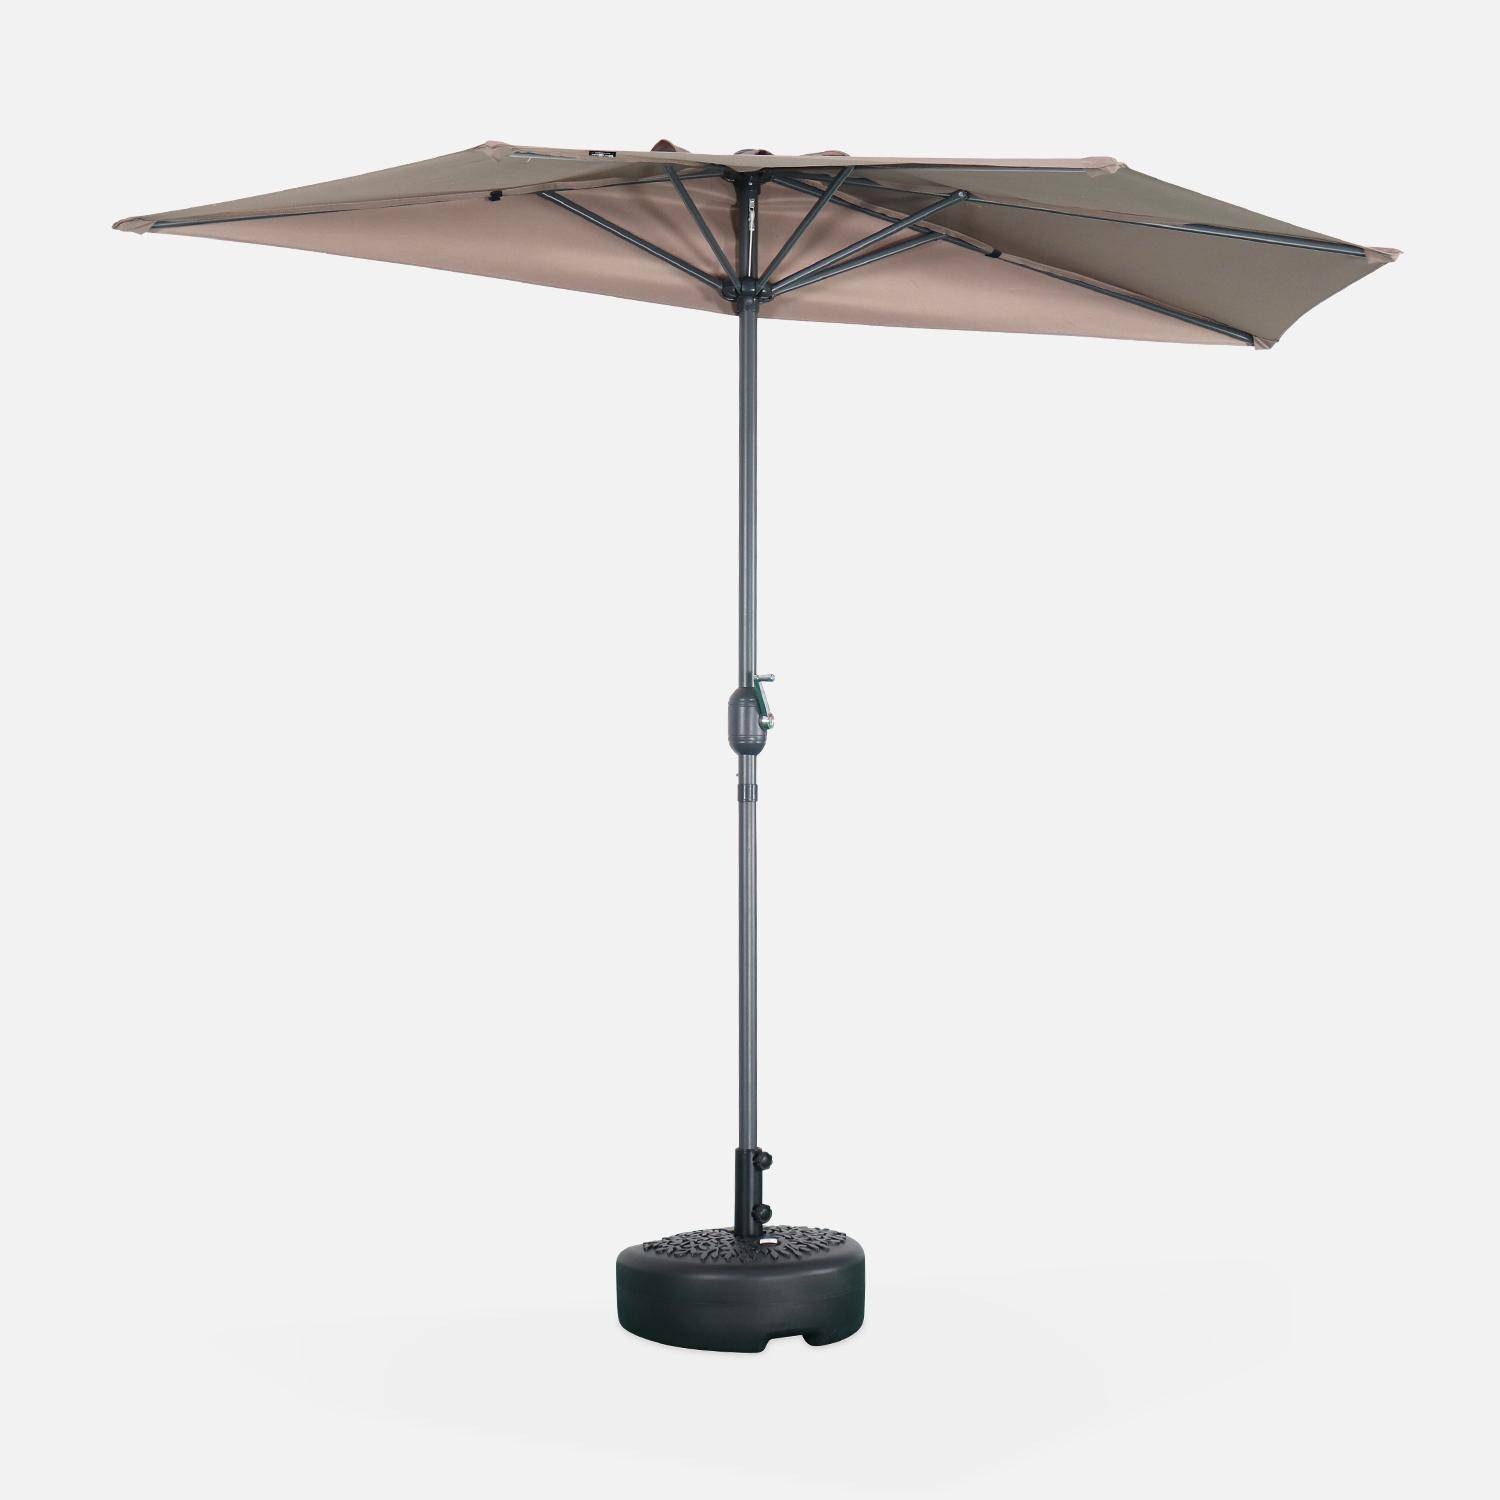  Parasol para balcón Ø250cm  – CALVI – Pequeño parasol recto, mástil en aluminio con manivela, tela color pardo  Photo2